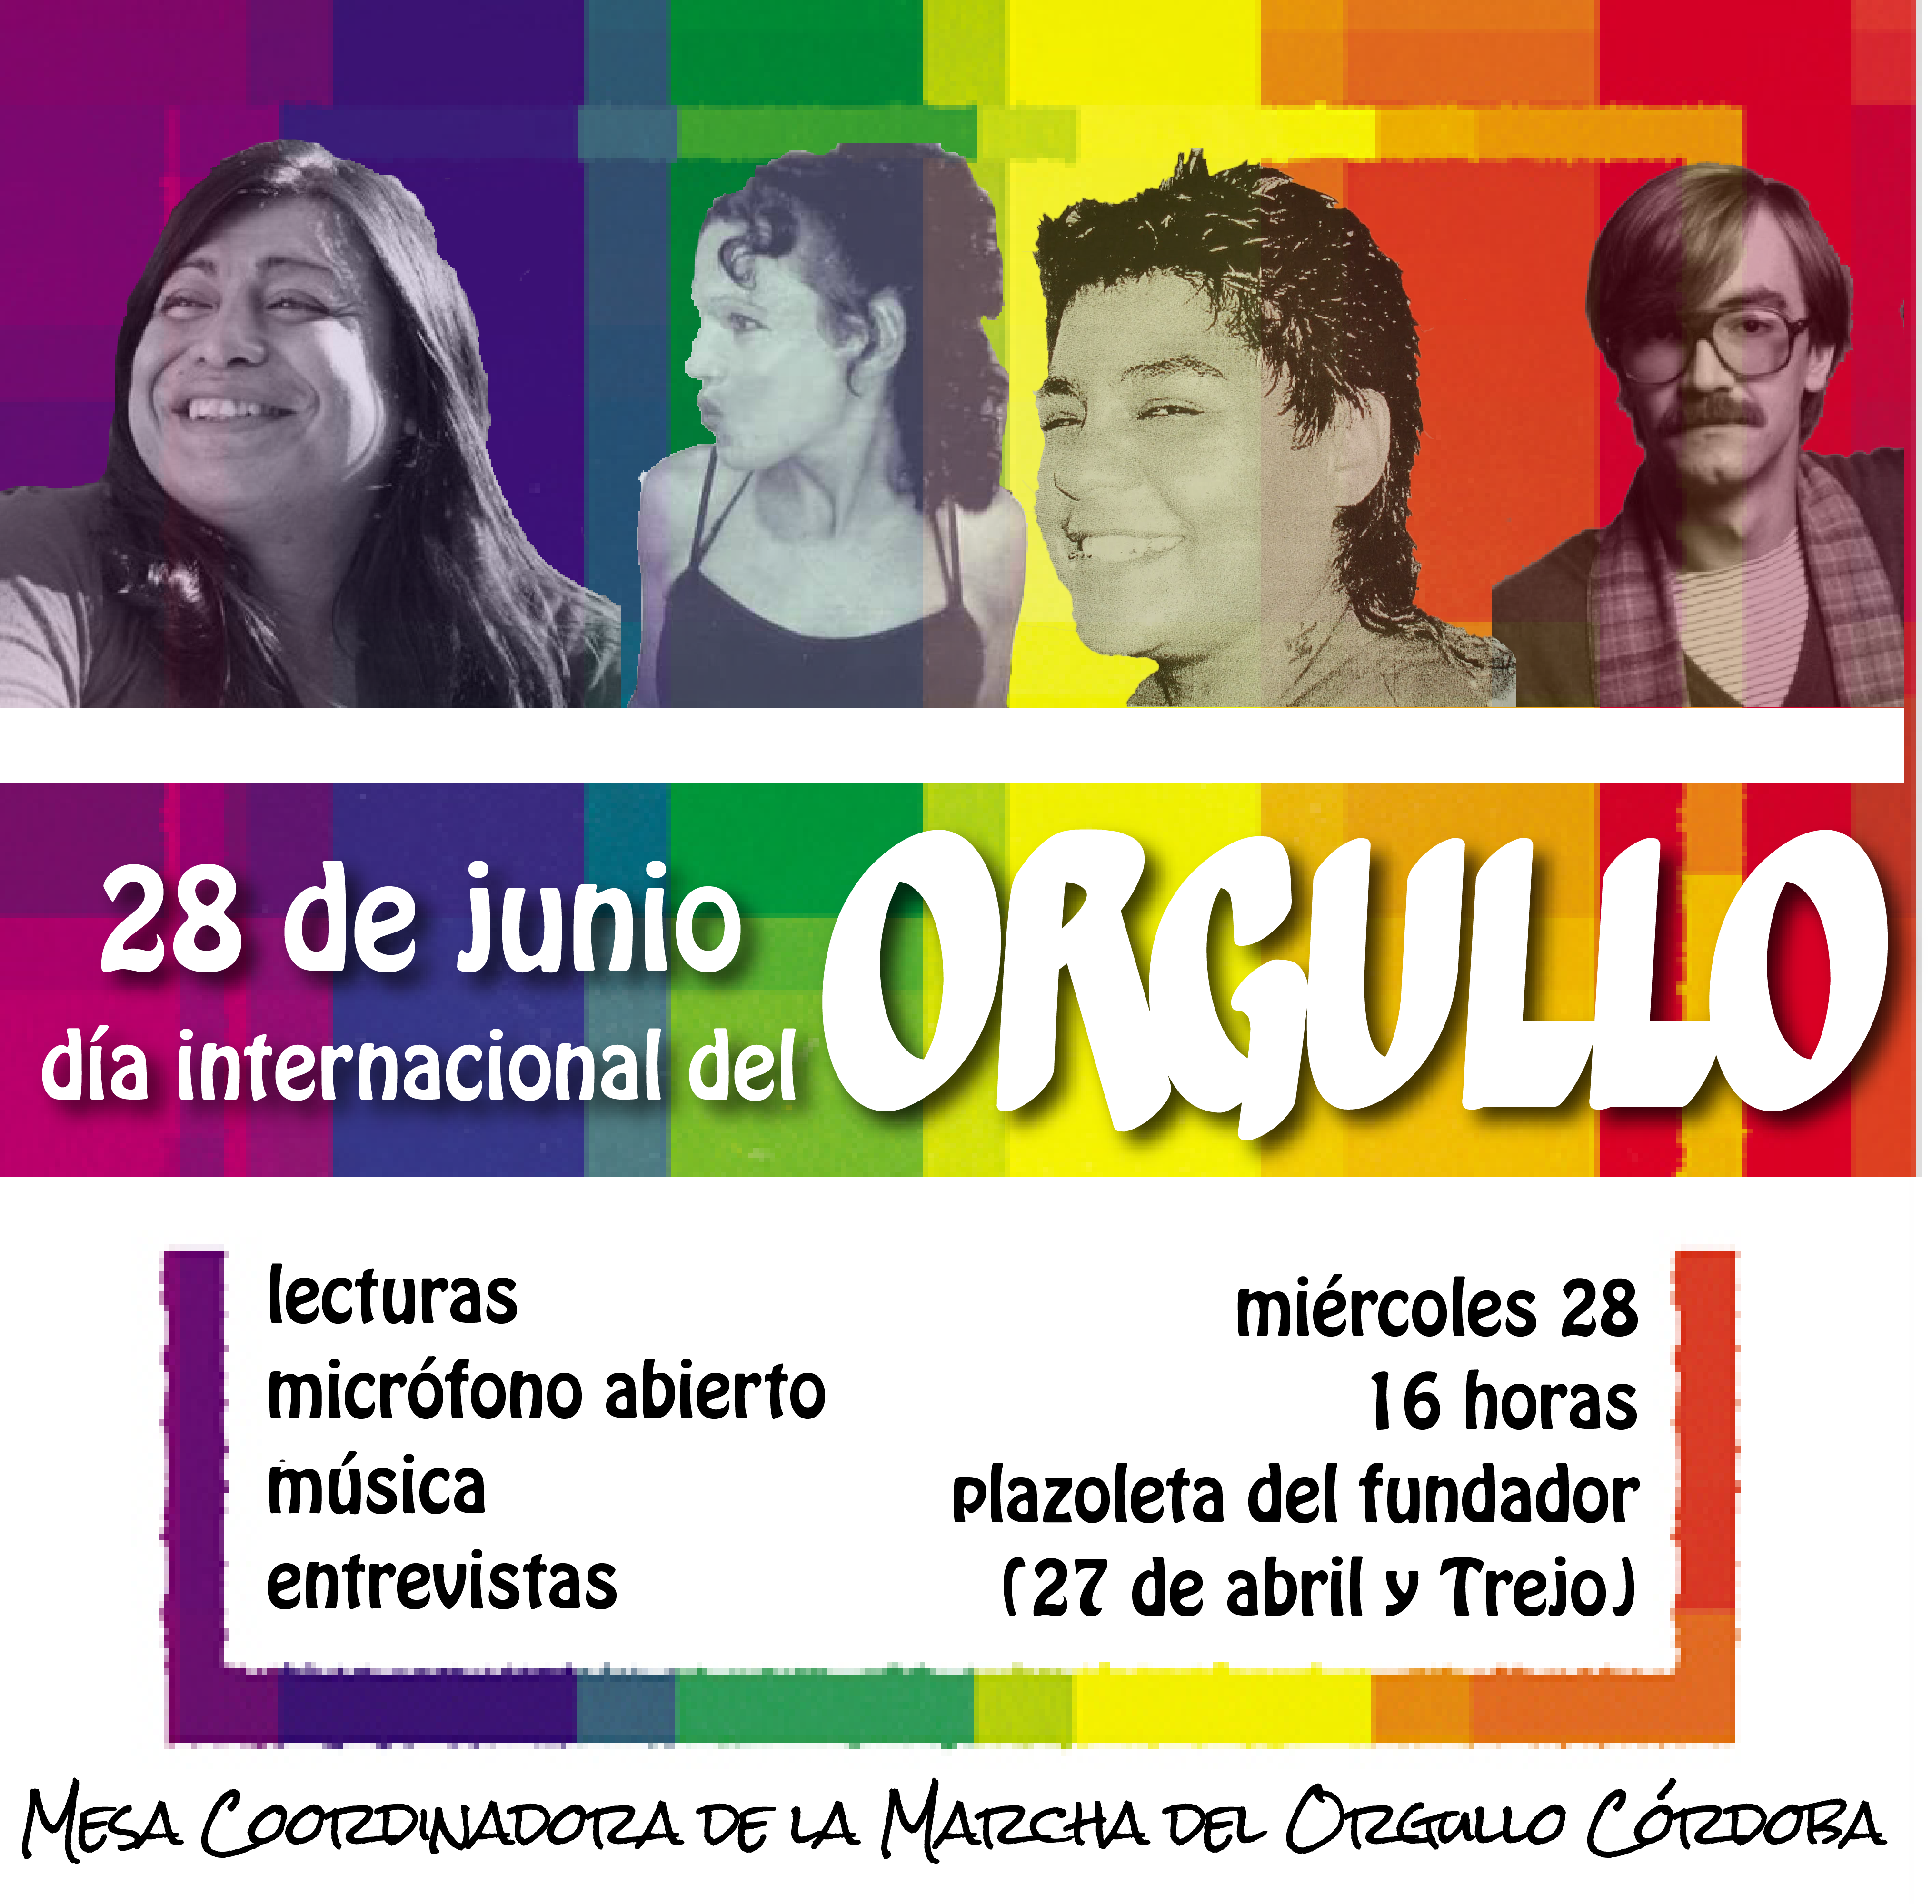 Córdoba: celebran Día Internacional del Orgullo